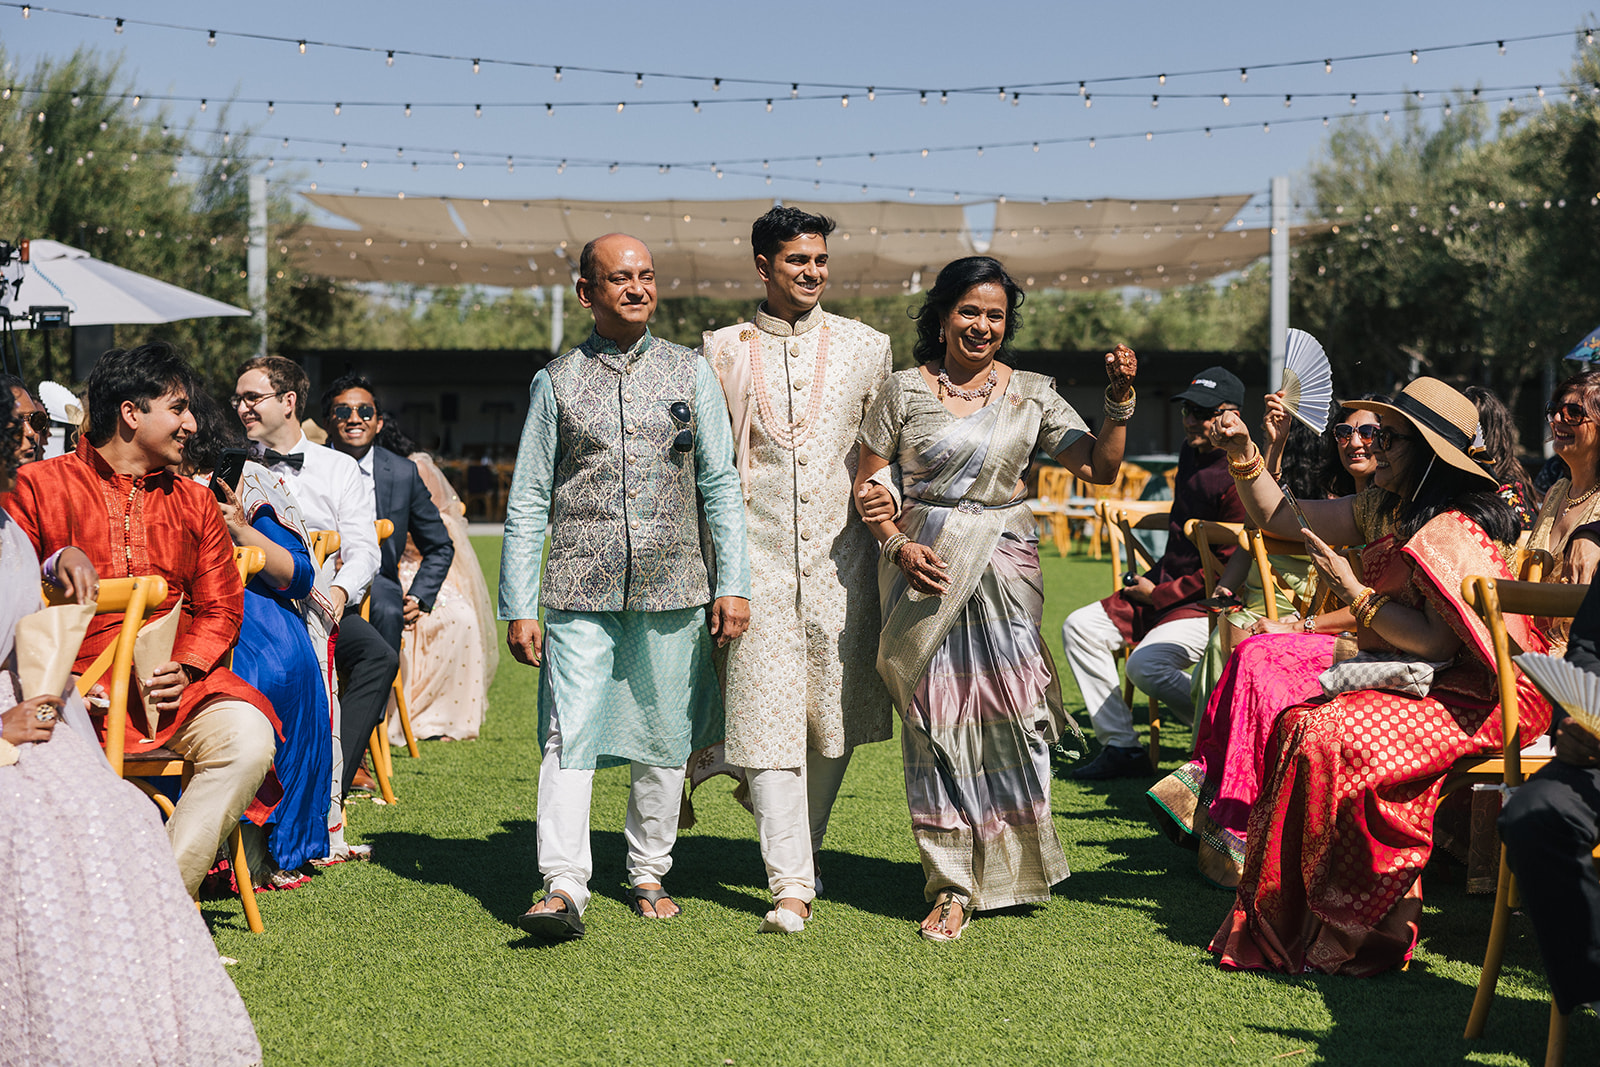 Indian Wedding at Leal Vineyards